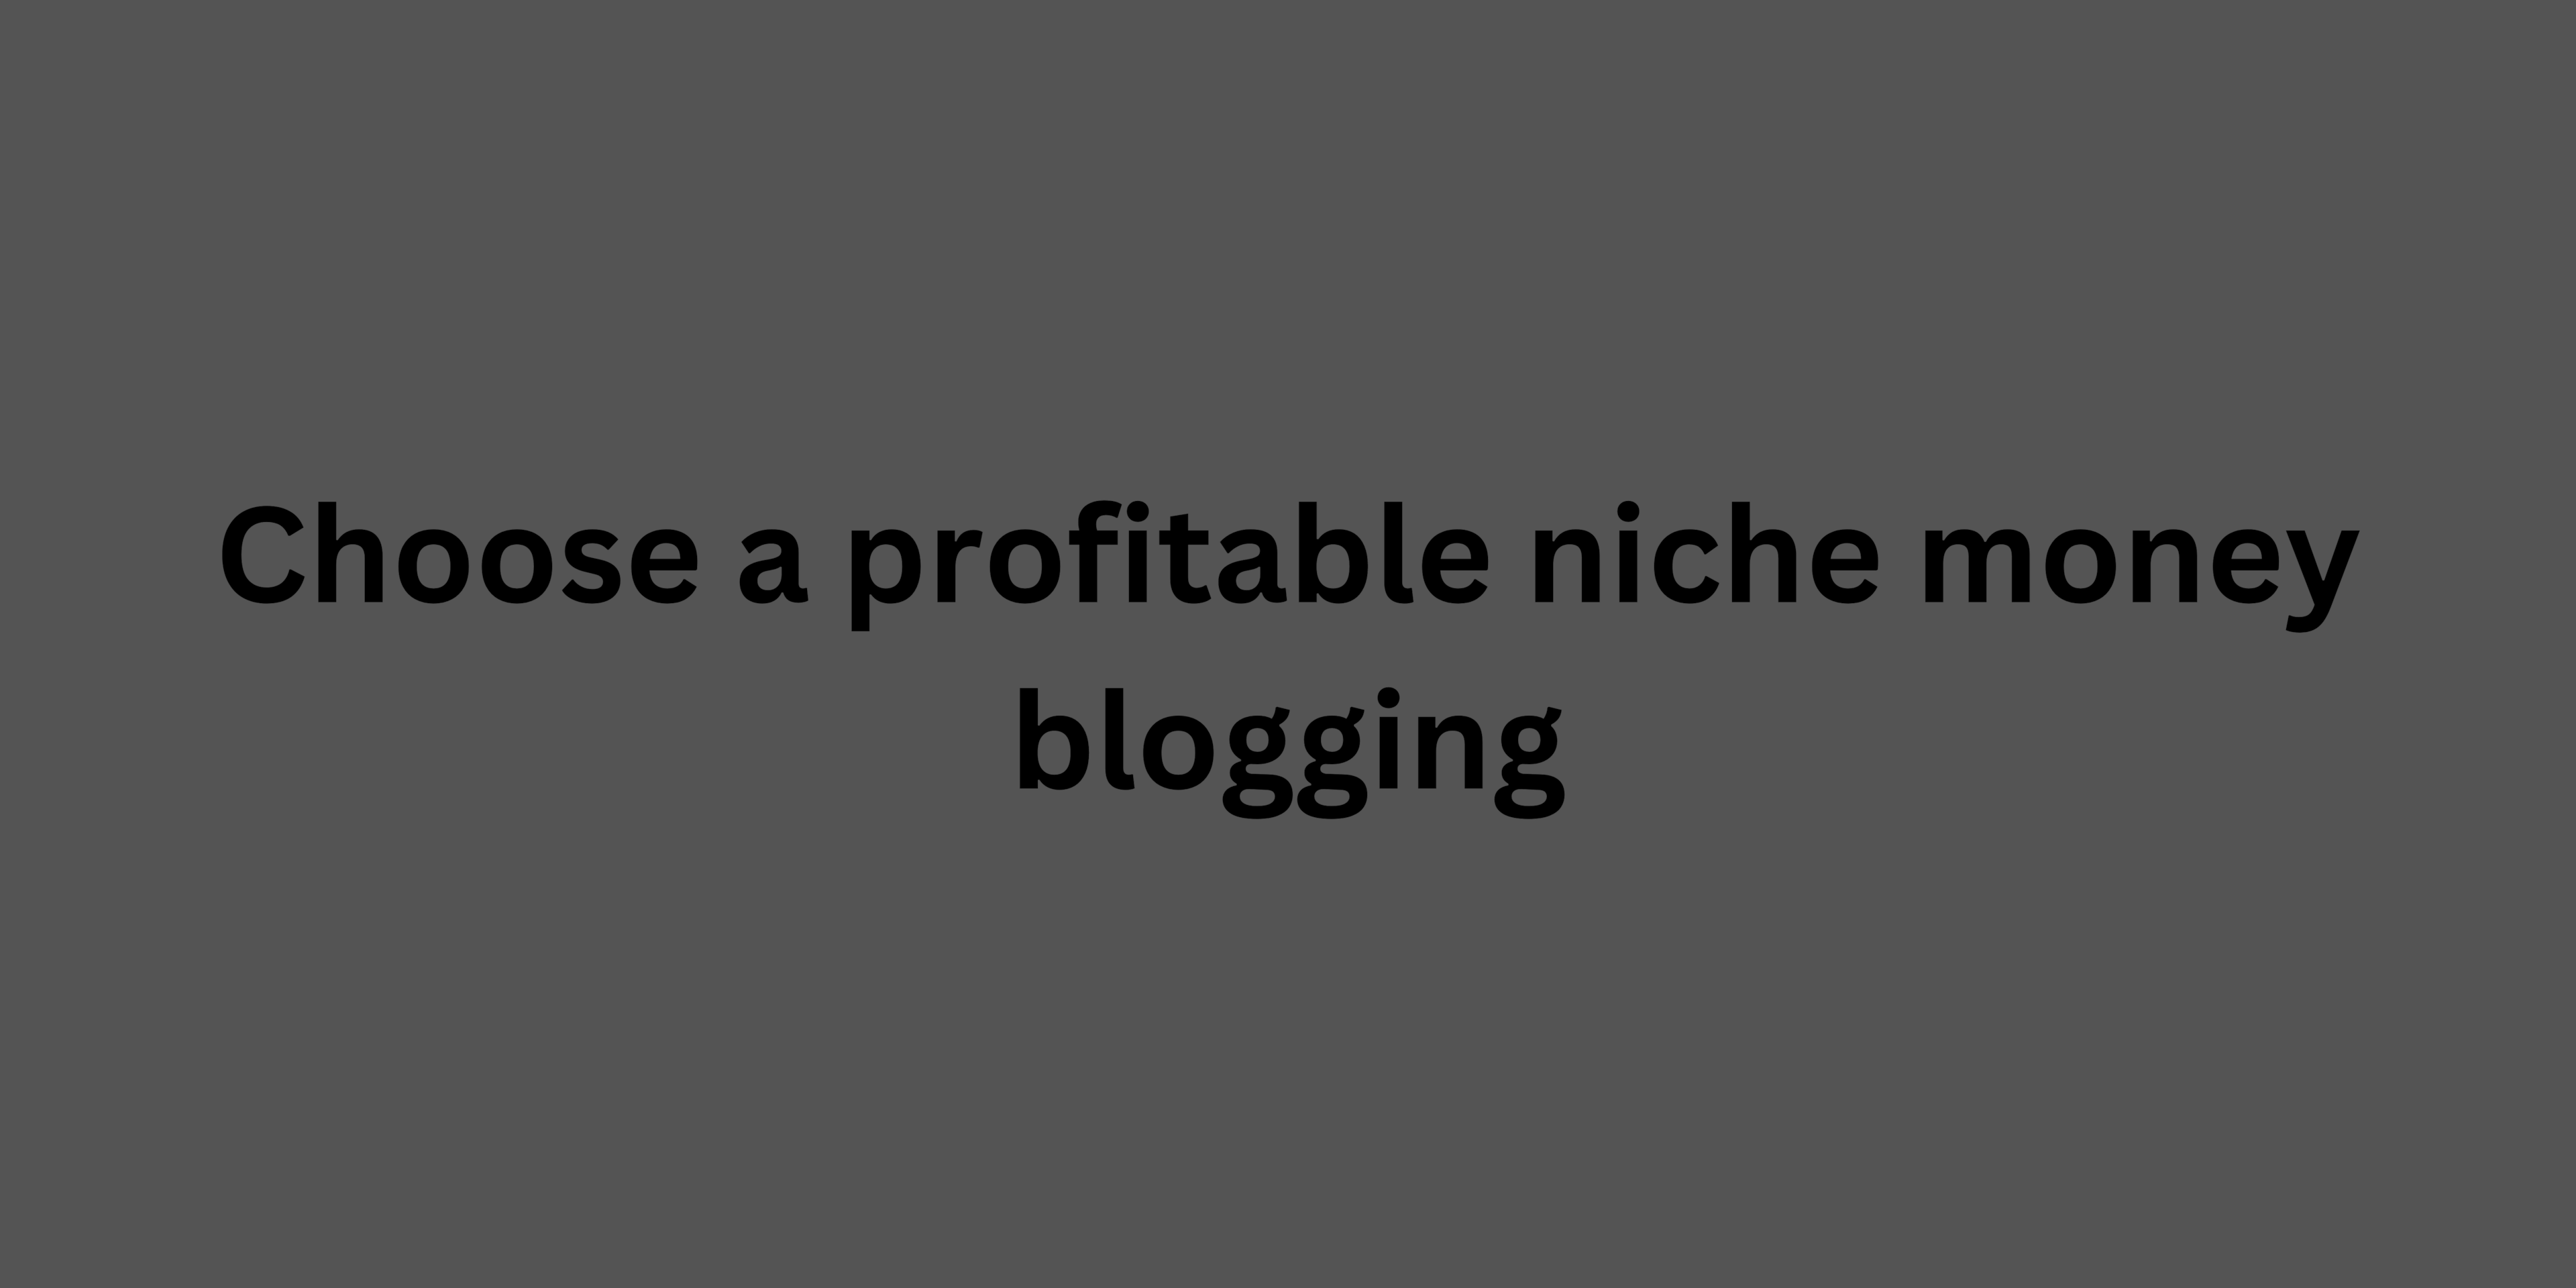 Choose a profitable niche money blogging: